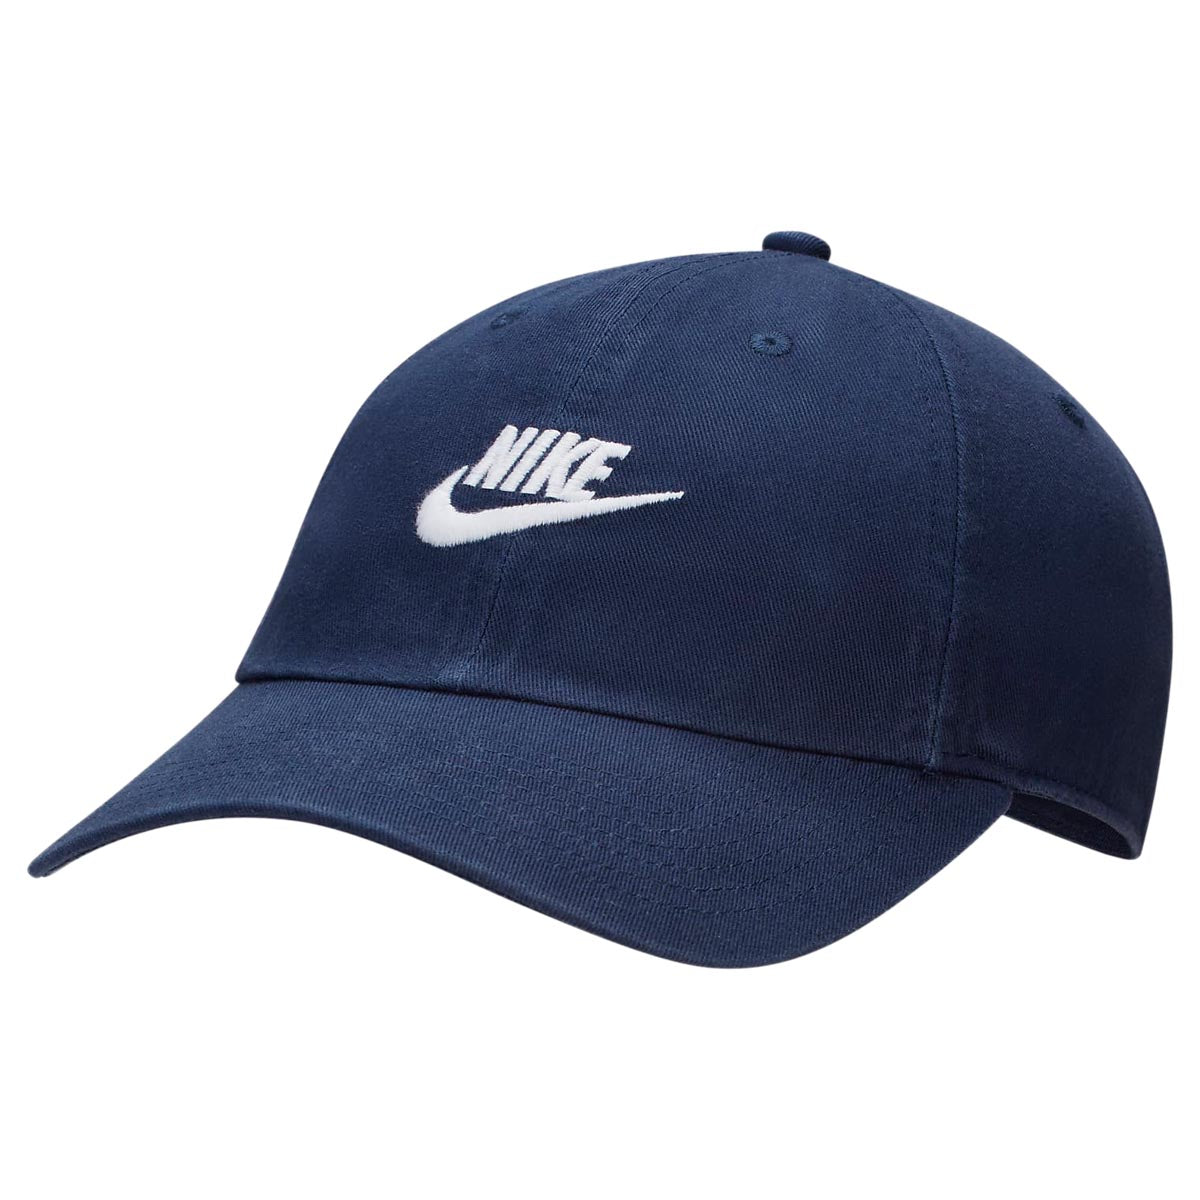 Nike SB Futbol Club Hat - Midnight Navy/White image 1